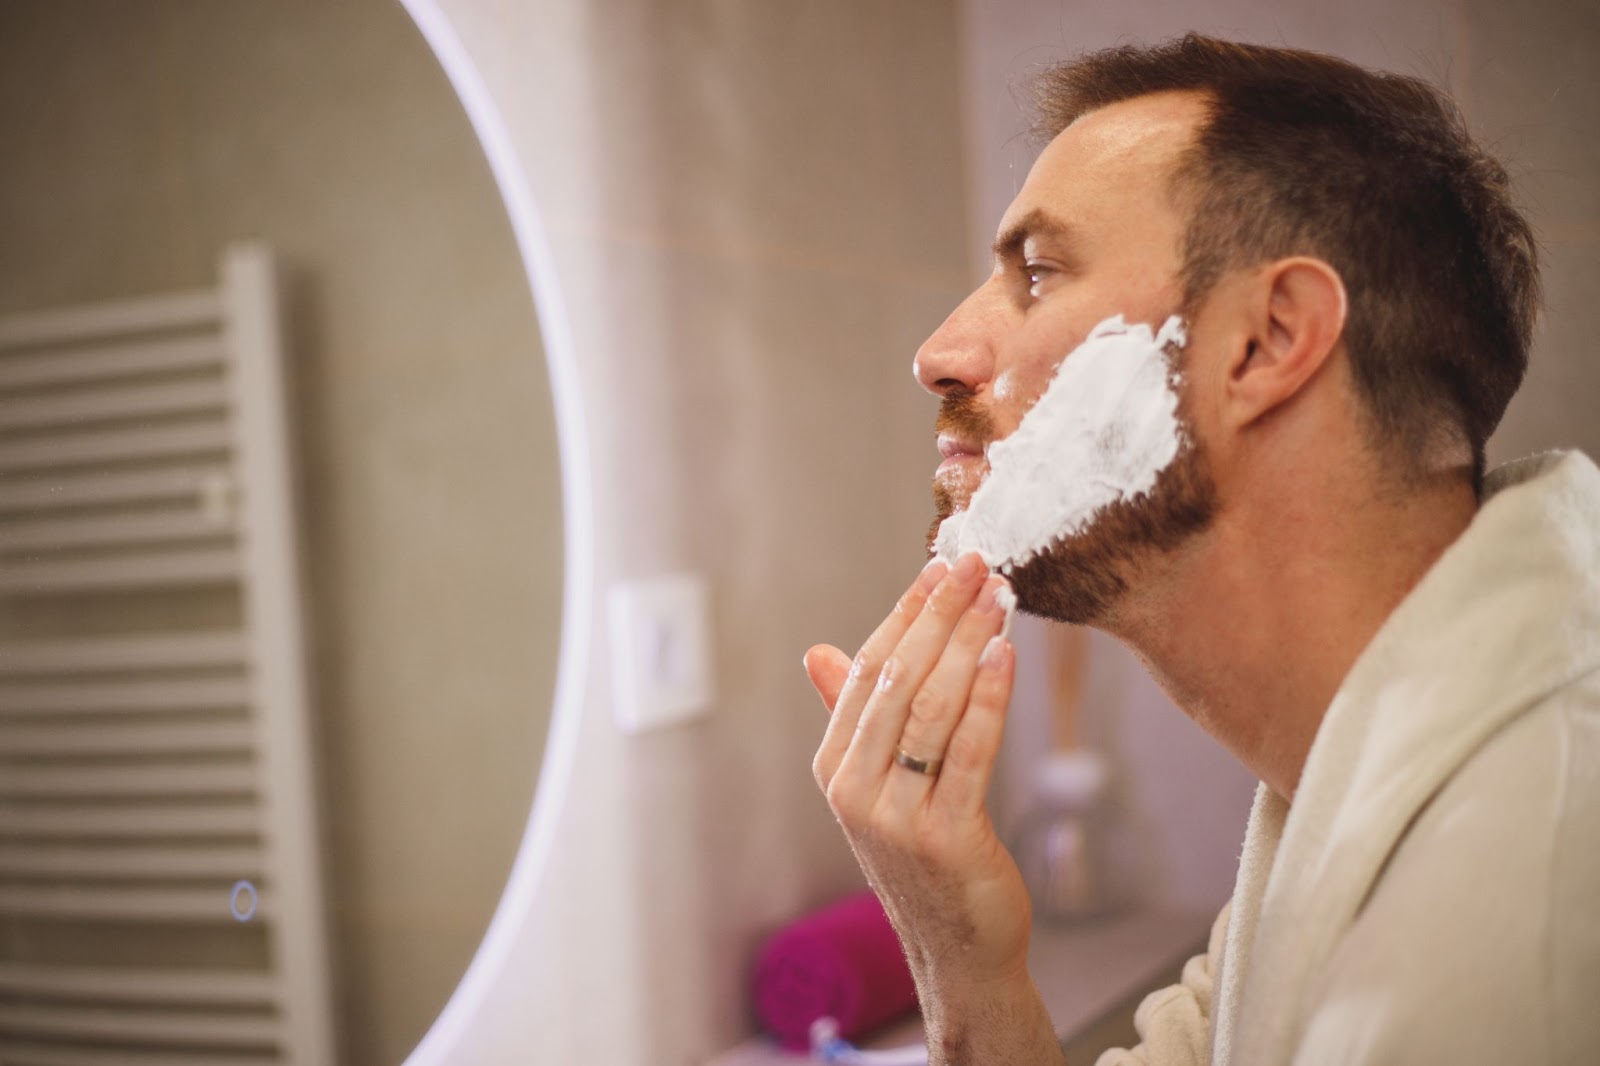 How to Make Shaving Last Longer